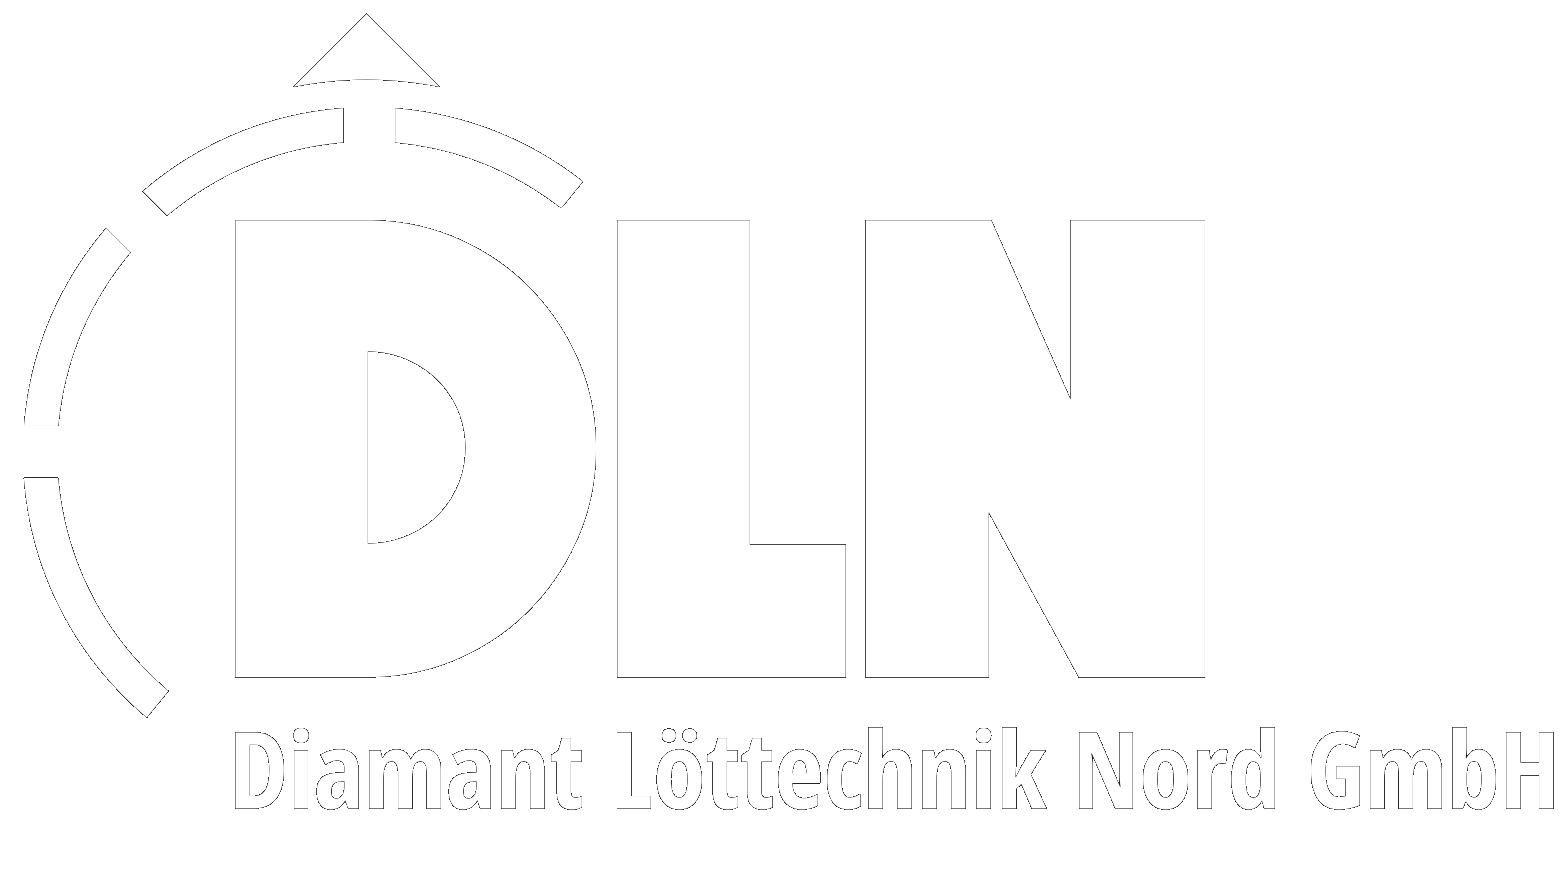 Diamant Löttechnik Nord GmbH